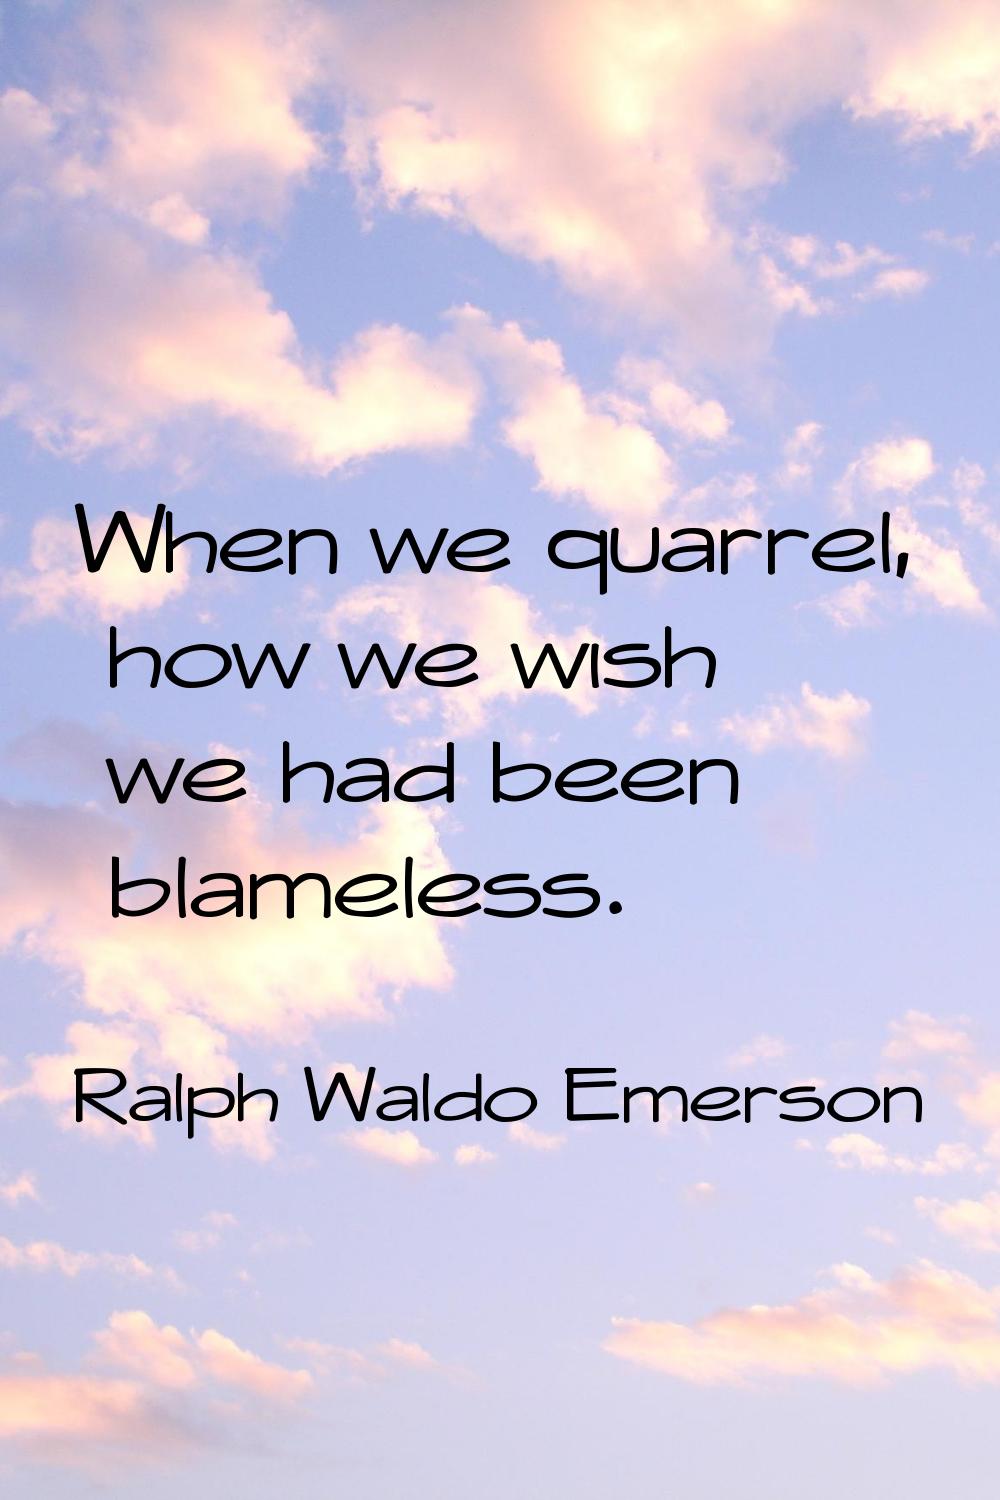 When we quarrel, how we wish we had been blameless.